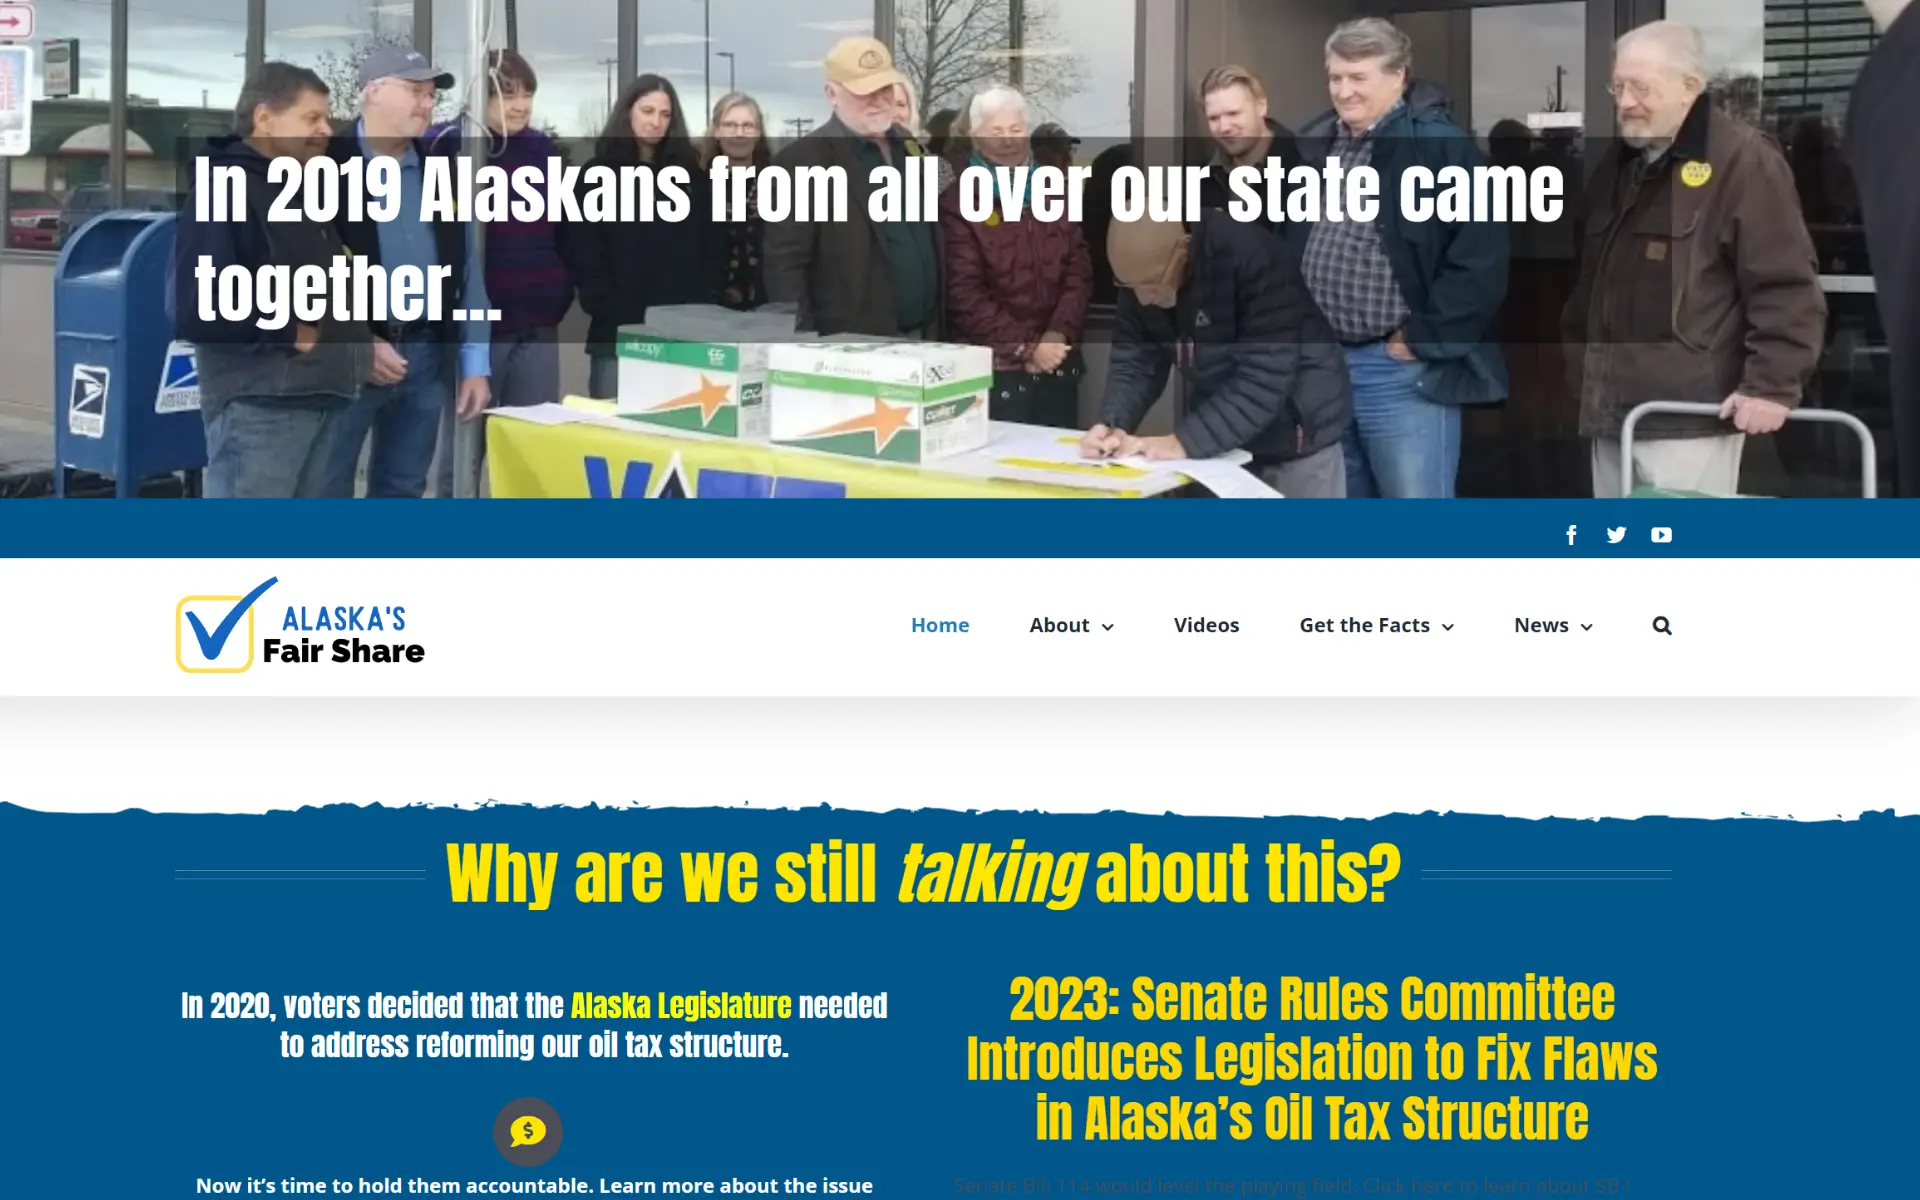 Alaska's Fair Share